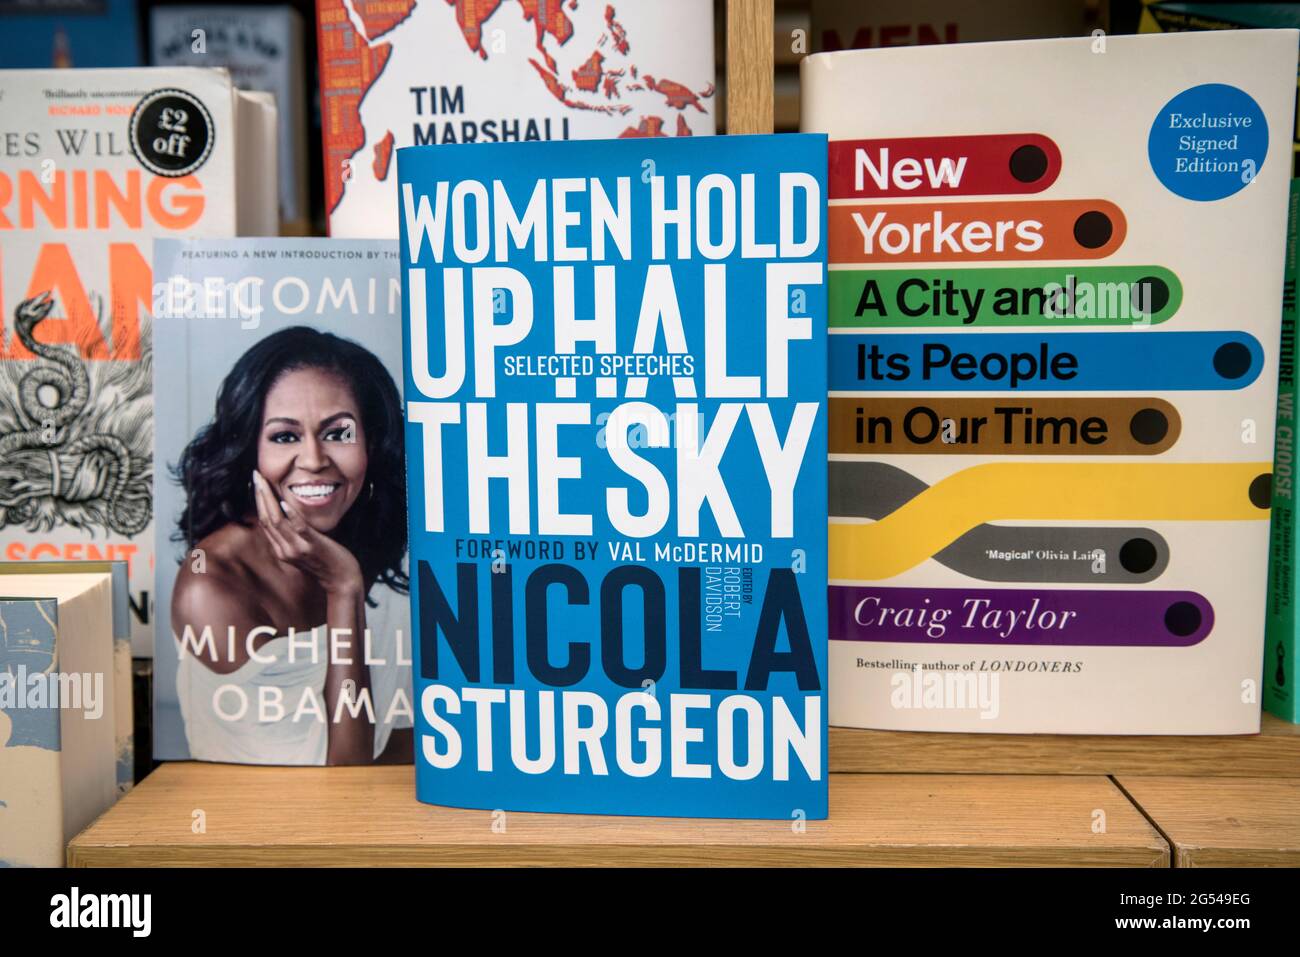 Copia de 'Women Hold Up the Sky' Los discursos seleccionados de Nicola Sturgeon en la ventana de una librería en Princes Street, Edimburgo, Escocia, Reino Unido. Foto de stock